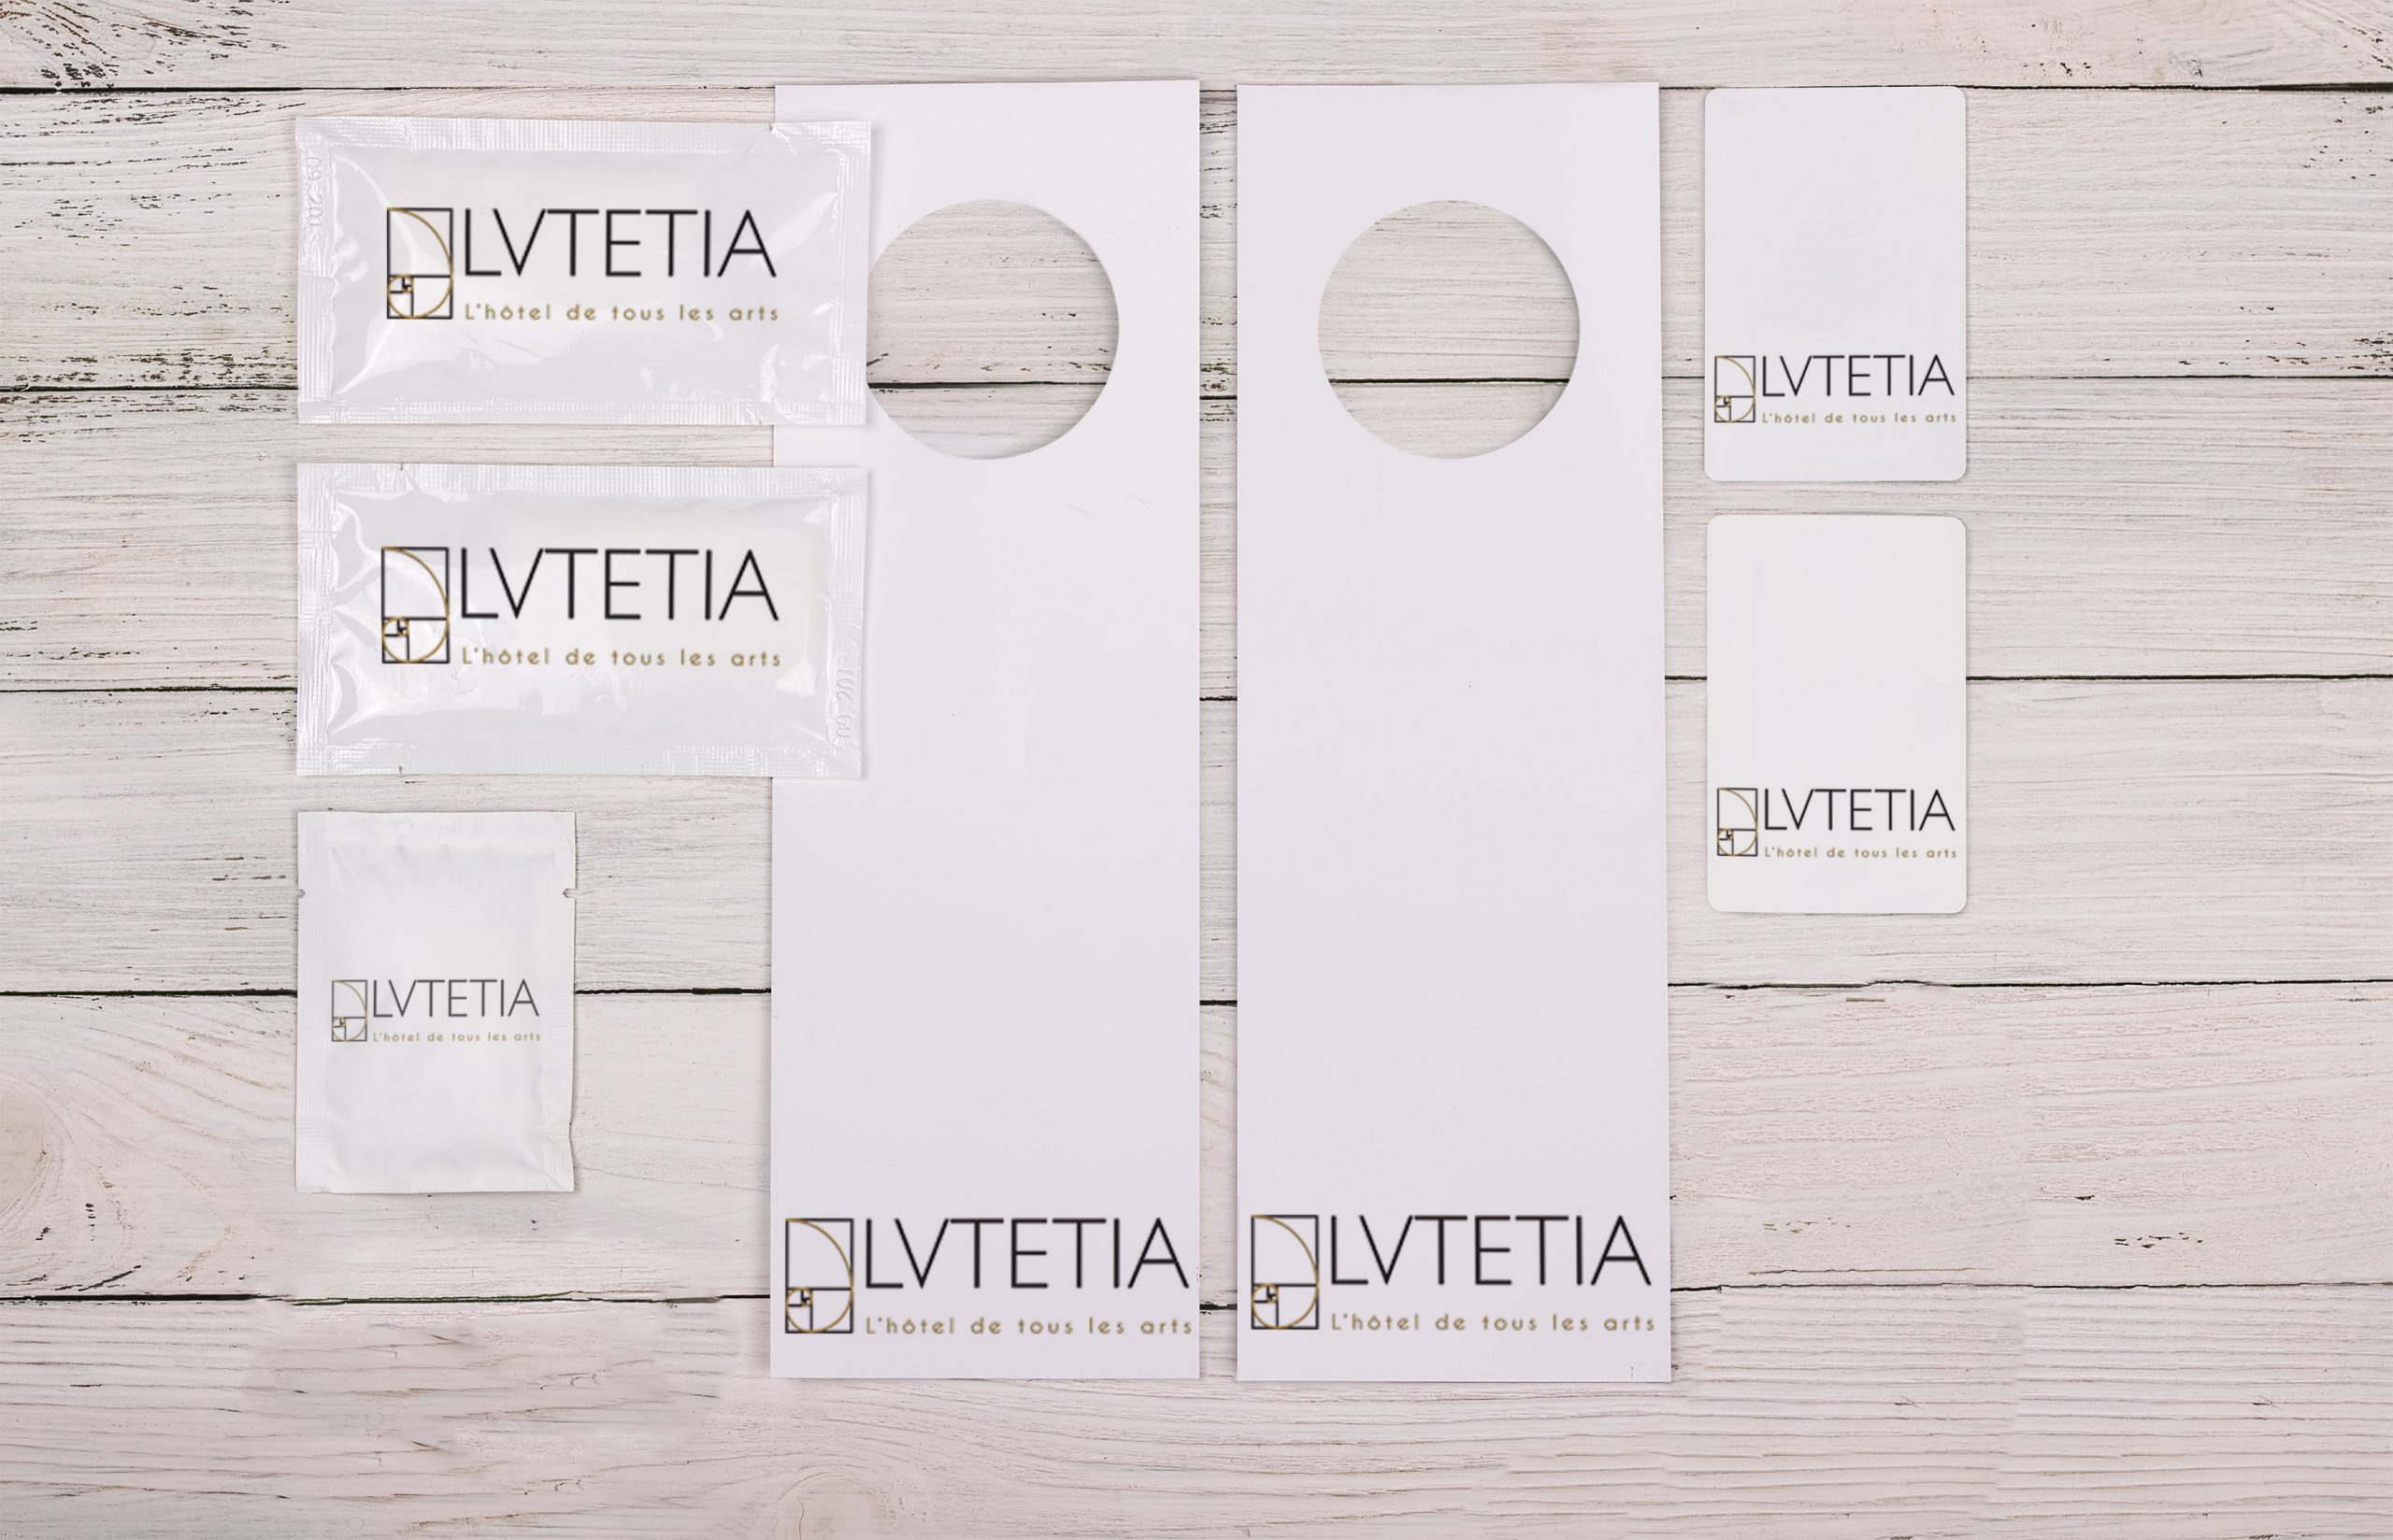 PROJET ESAT/ LUTETIA
Rénovation de l’identité du Lutetia, de son offre et de son apparence. ( logo, main visual, packaging collector, video, plaquette,...)